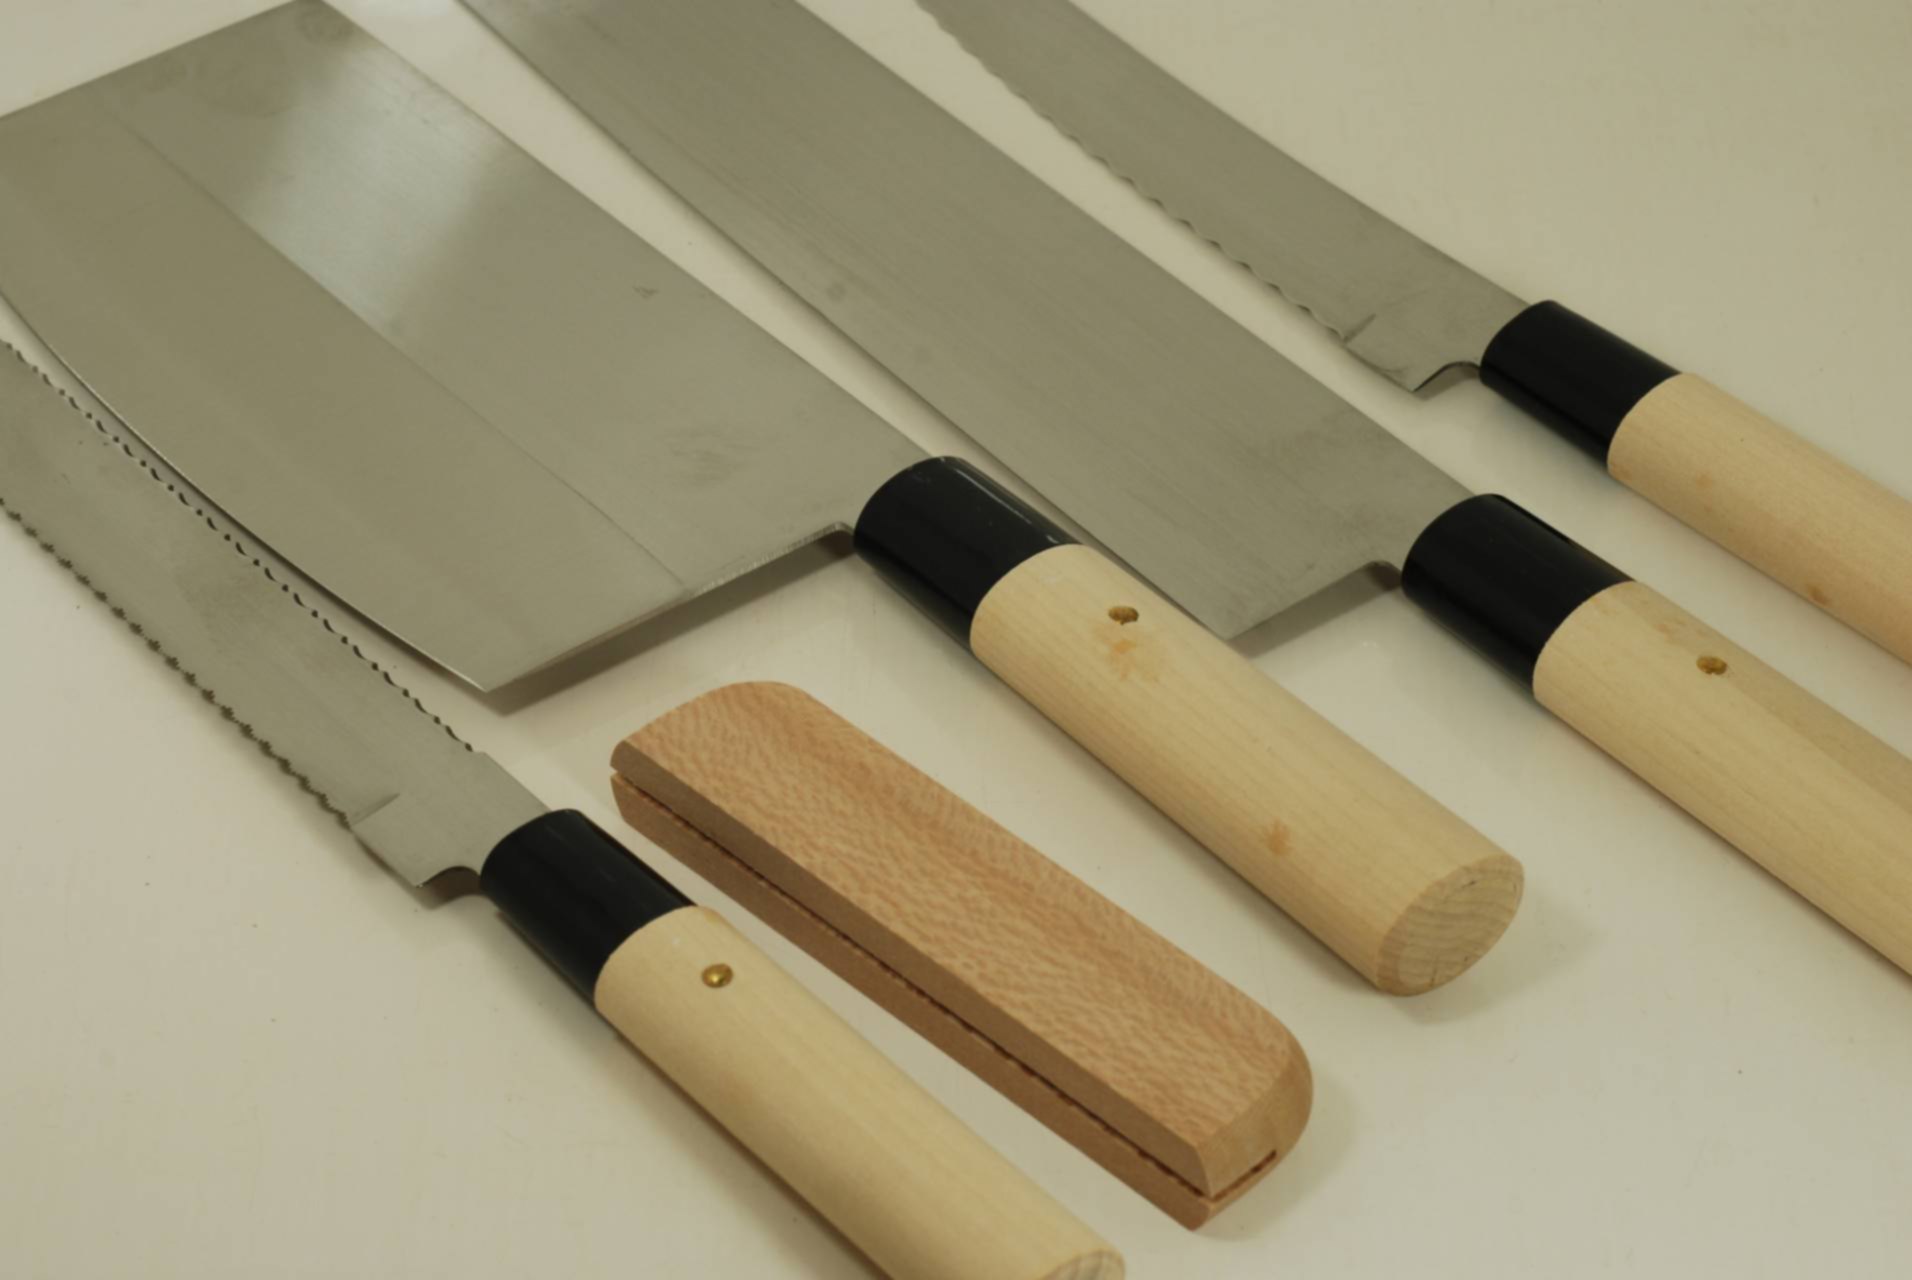 Четверо ножей. Квадратный японский нож. Набор японских ножей. Старинные японские ножи. Фирмы японских ножей.